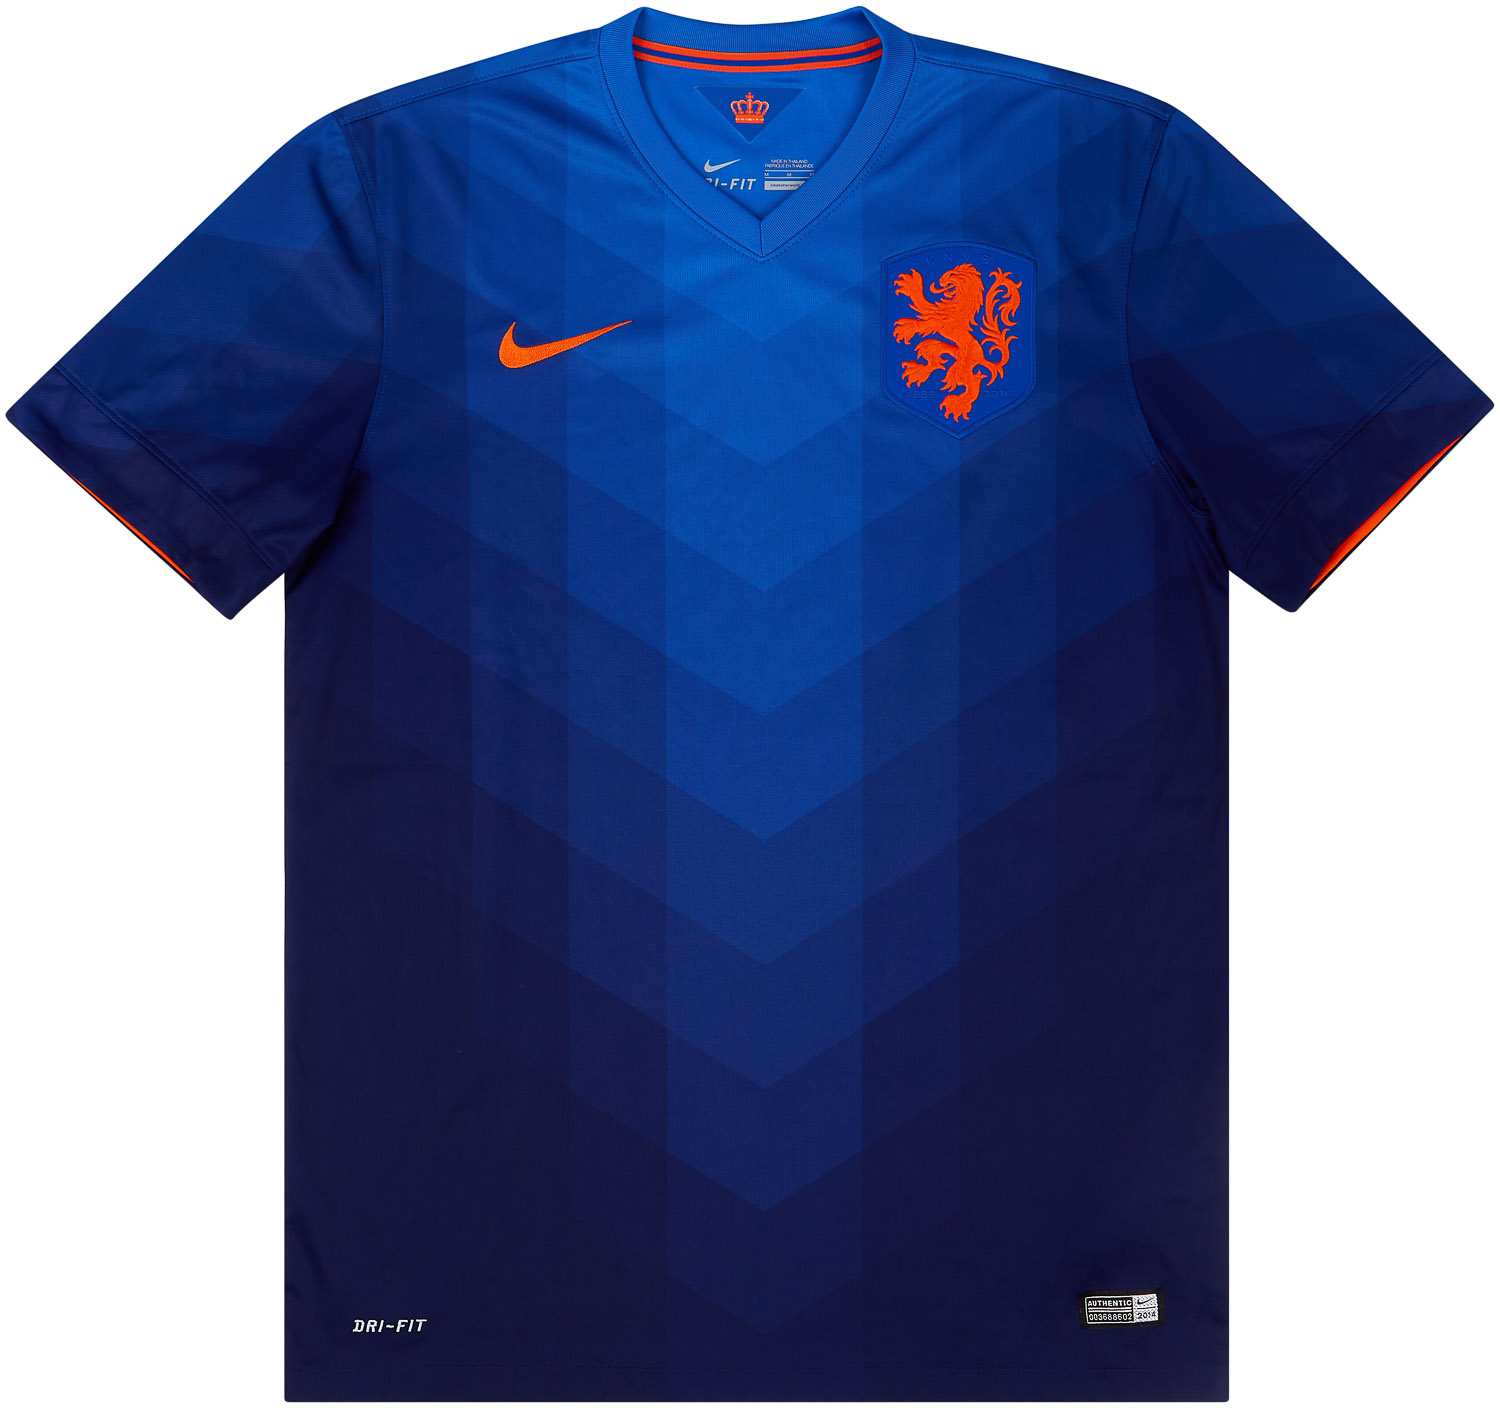 2014-15 Netherlands Away Shirt - 6/10 - ()